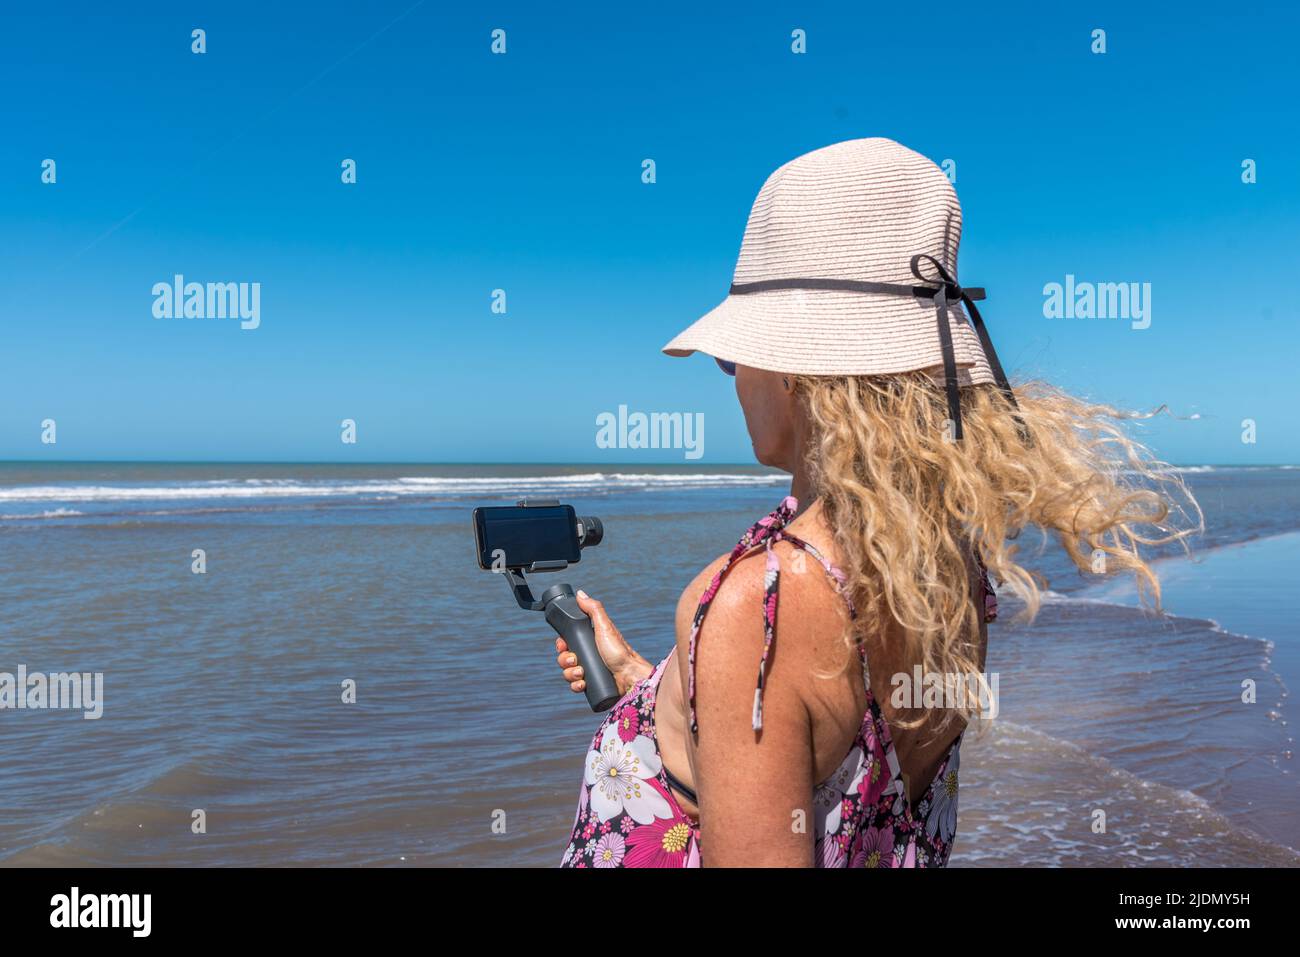 Frau, die ein Mobiltelefon mit einem Stativ benutzt, während der Wind ihre Haare am Strand bewegt Stockfoto